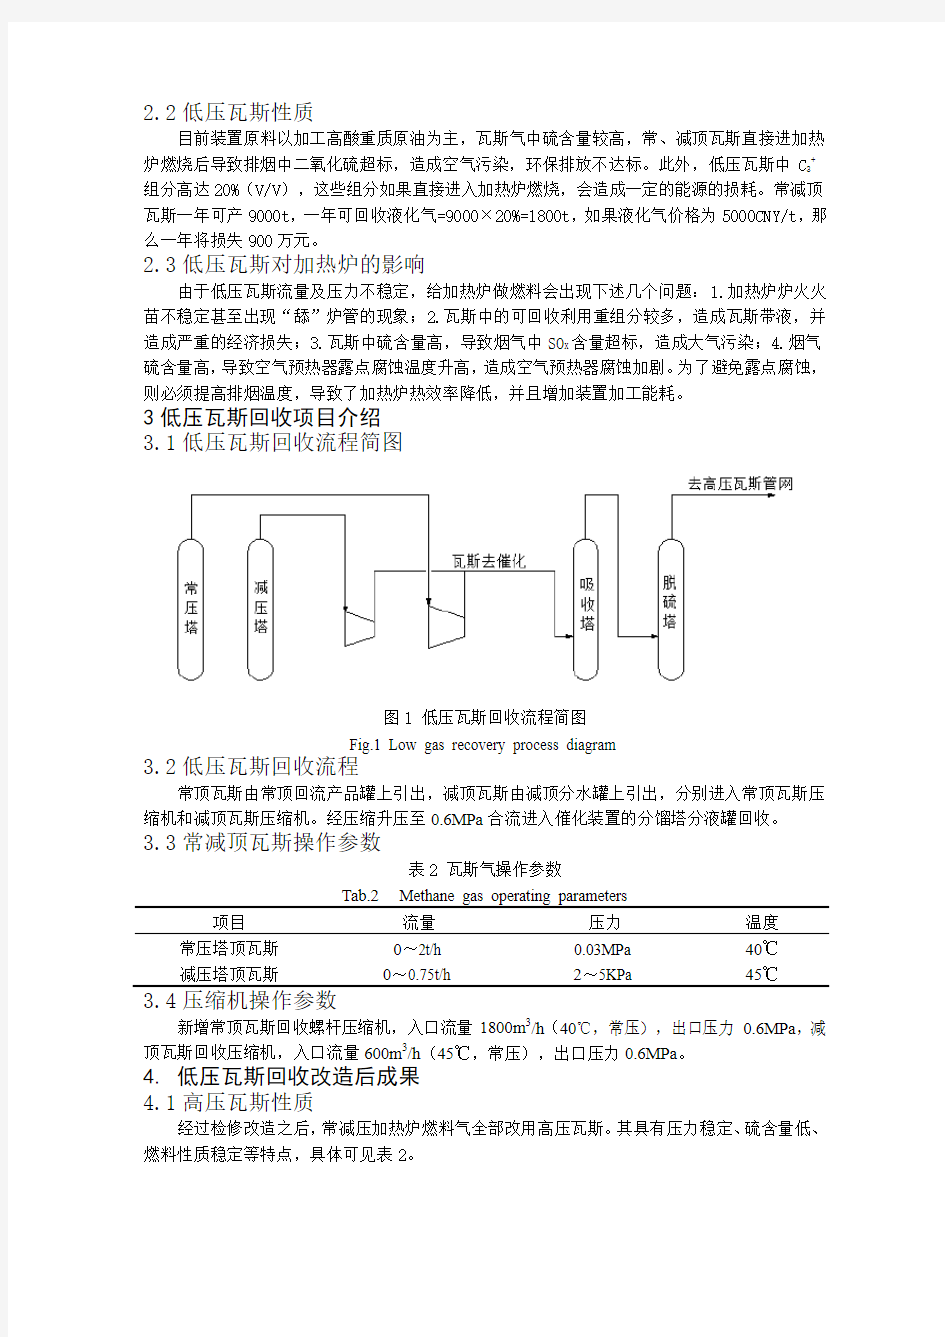 惠州炼化常减压装置低压瓦斯气回收技术分析与探讨